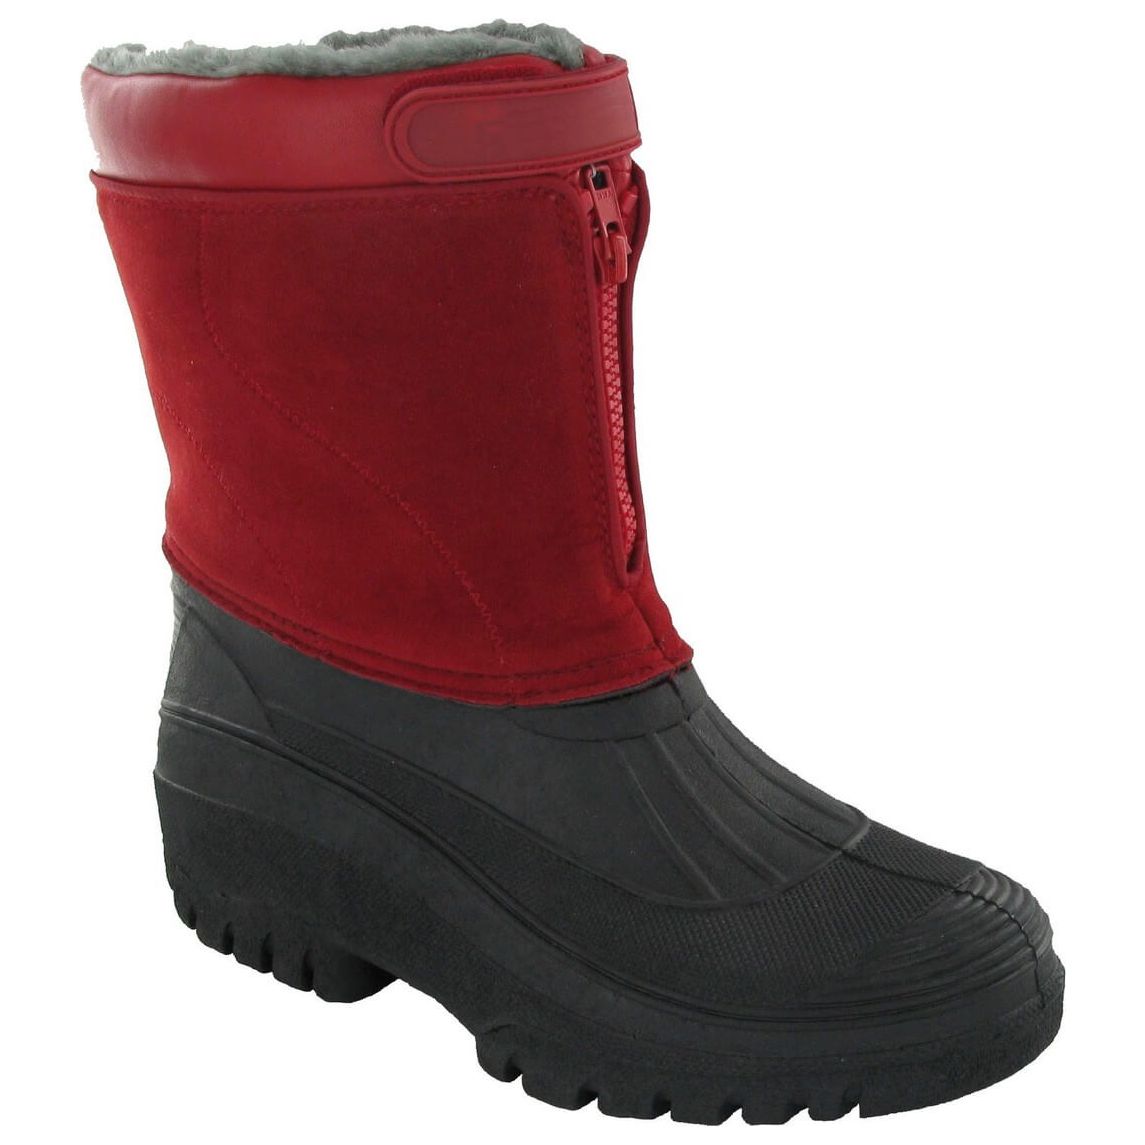 Cotswold Venture Waterproof Winter Boots Mens